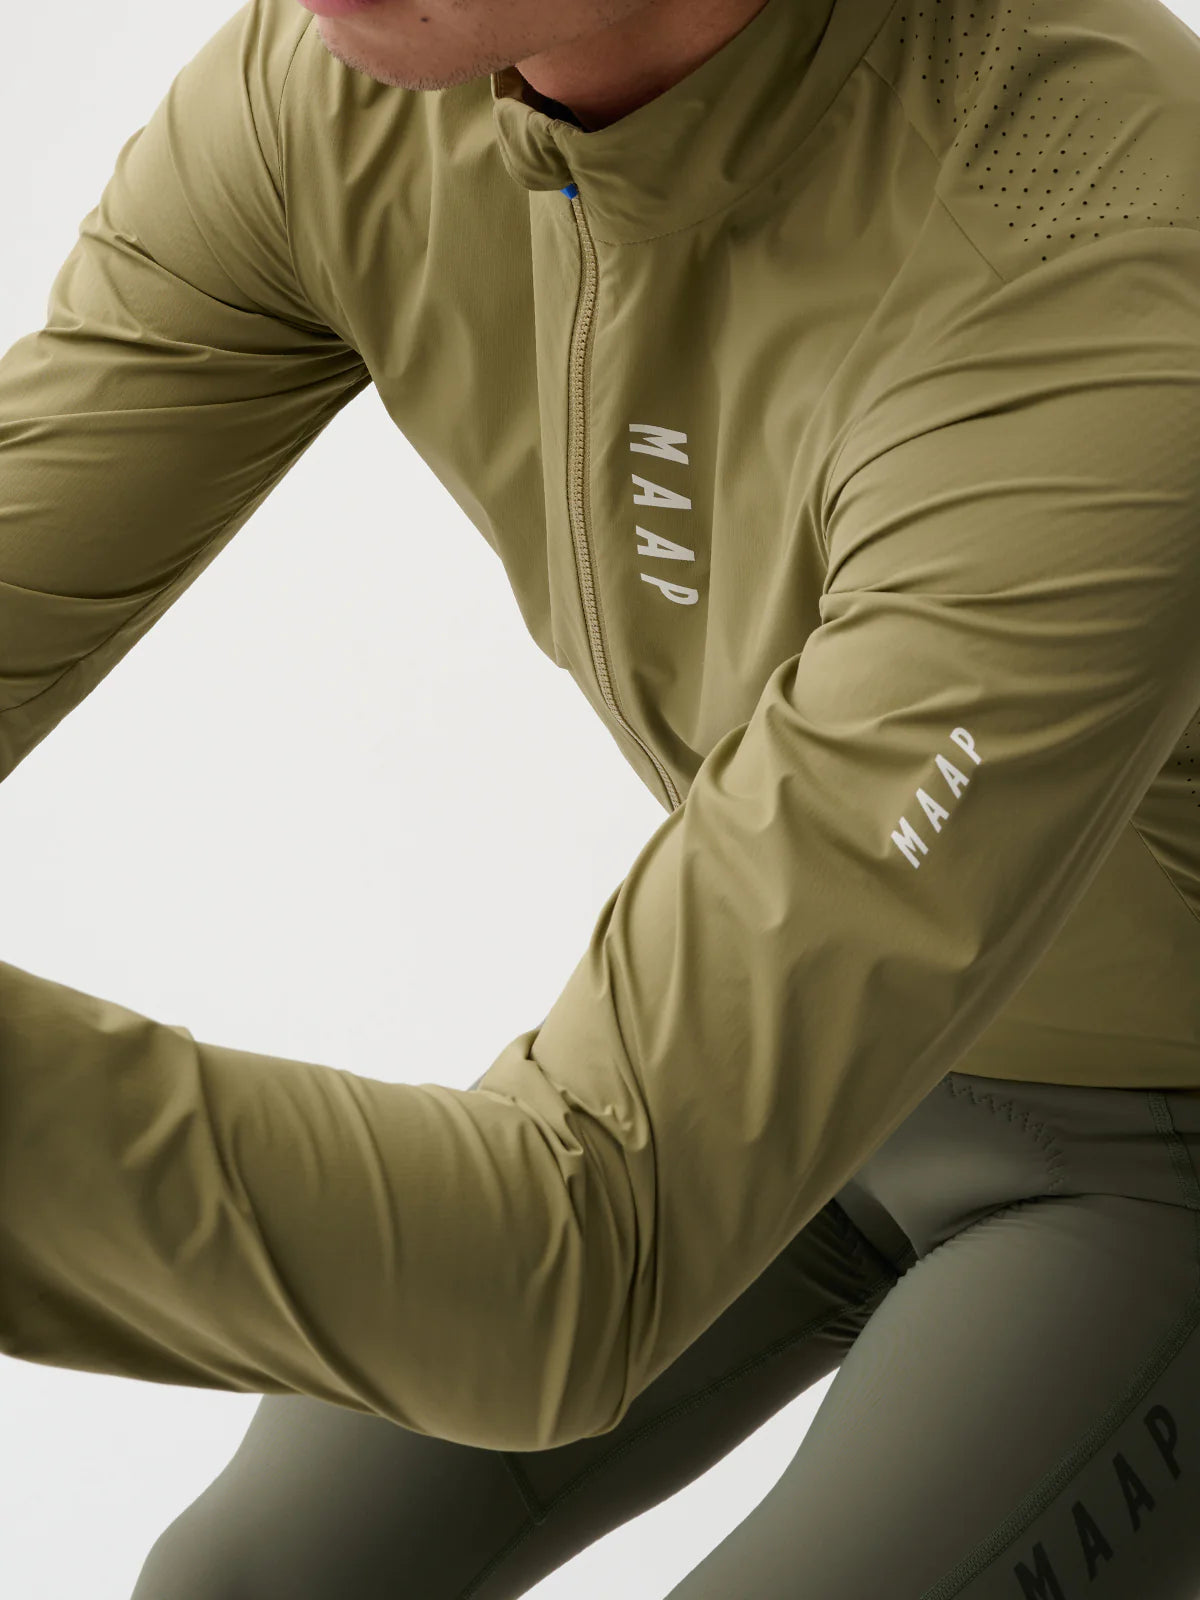 MAAP Draft Dark Ore ジャケット | 軽量で通気性のあるサイクリングジャケット | CYCLISM